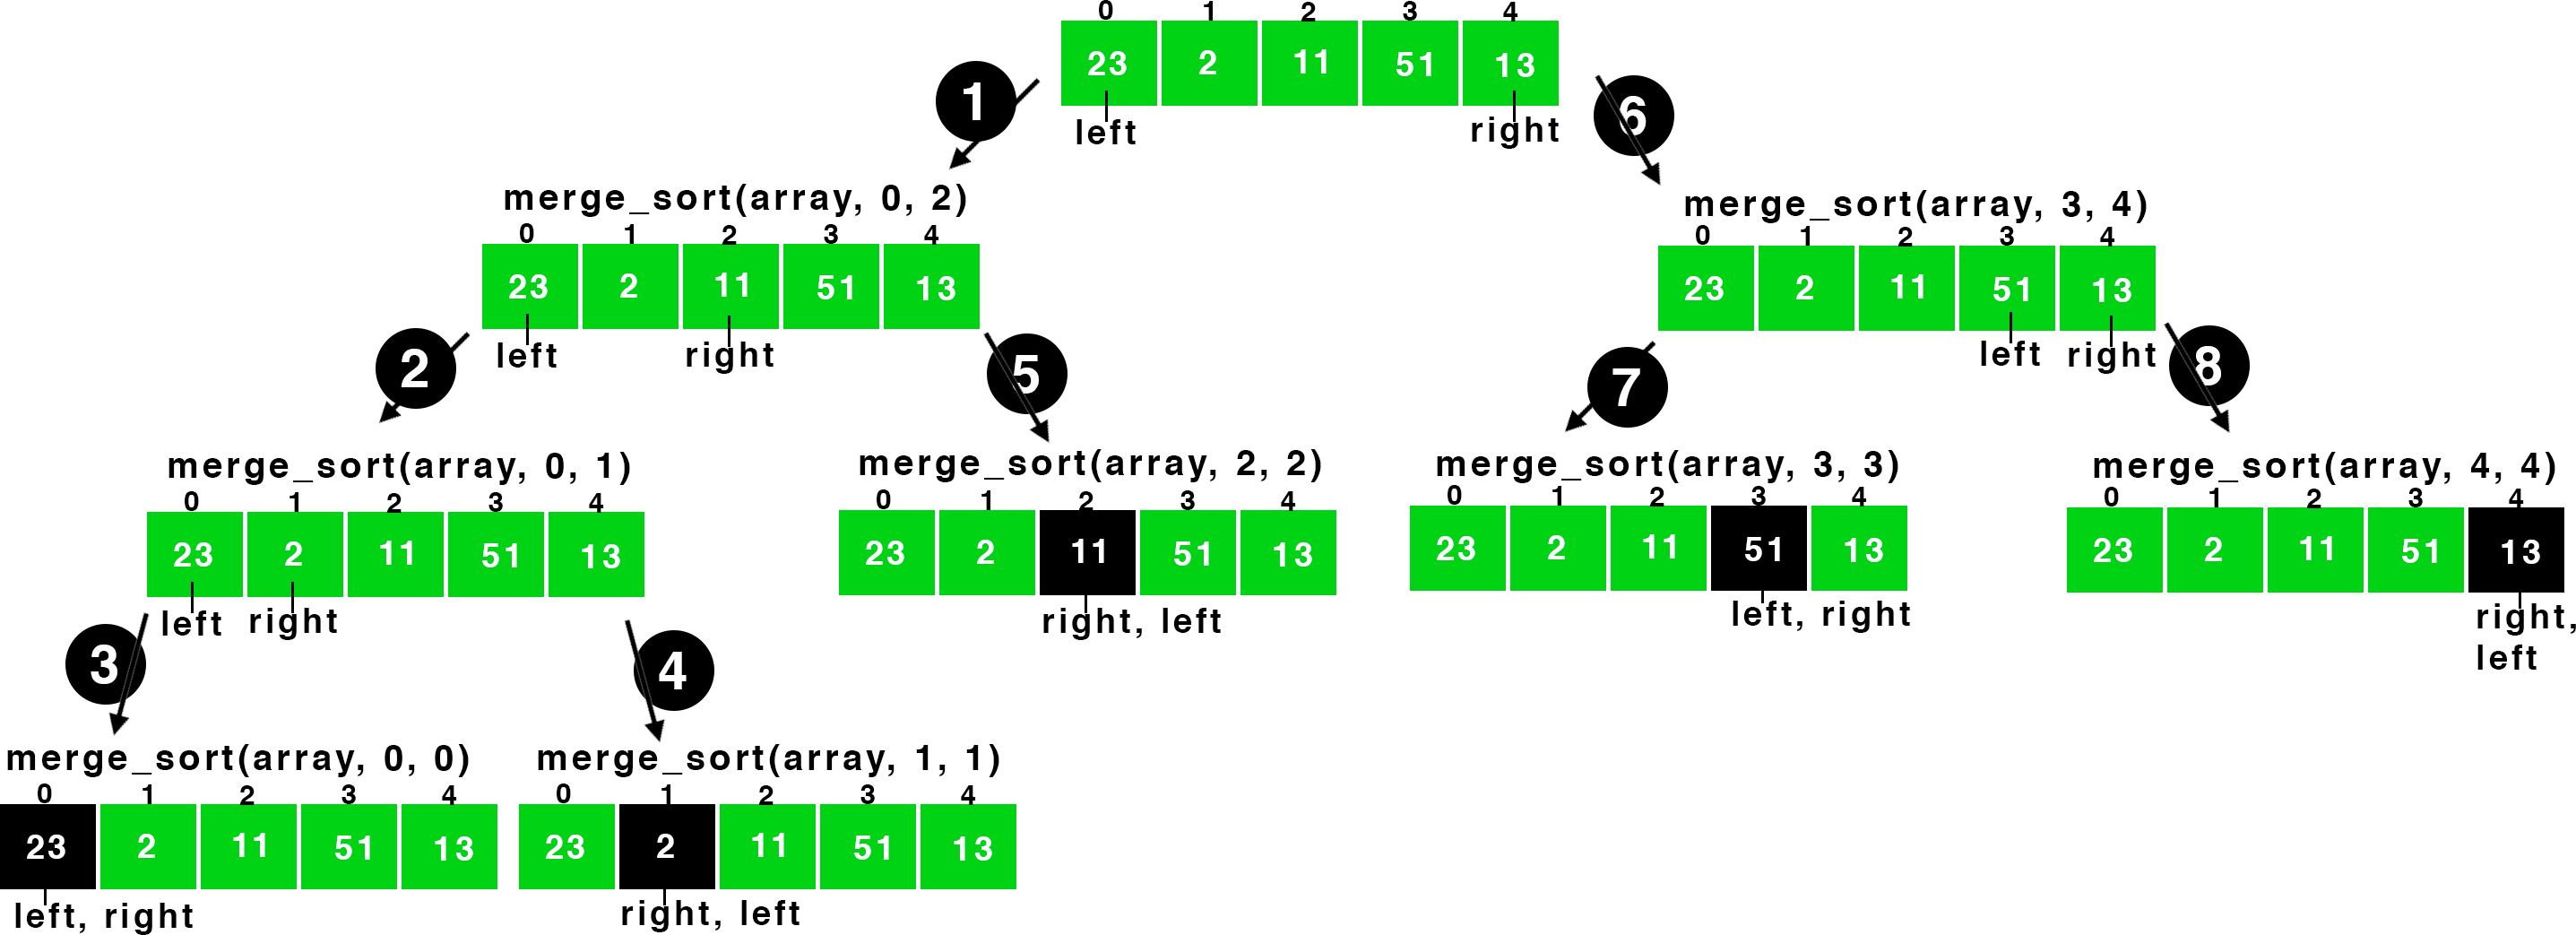 claaing of merge_sort function